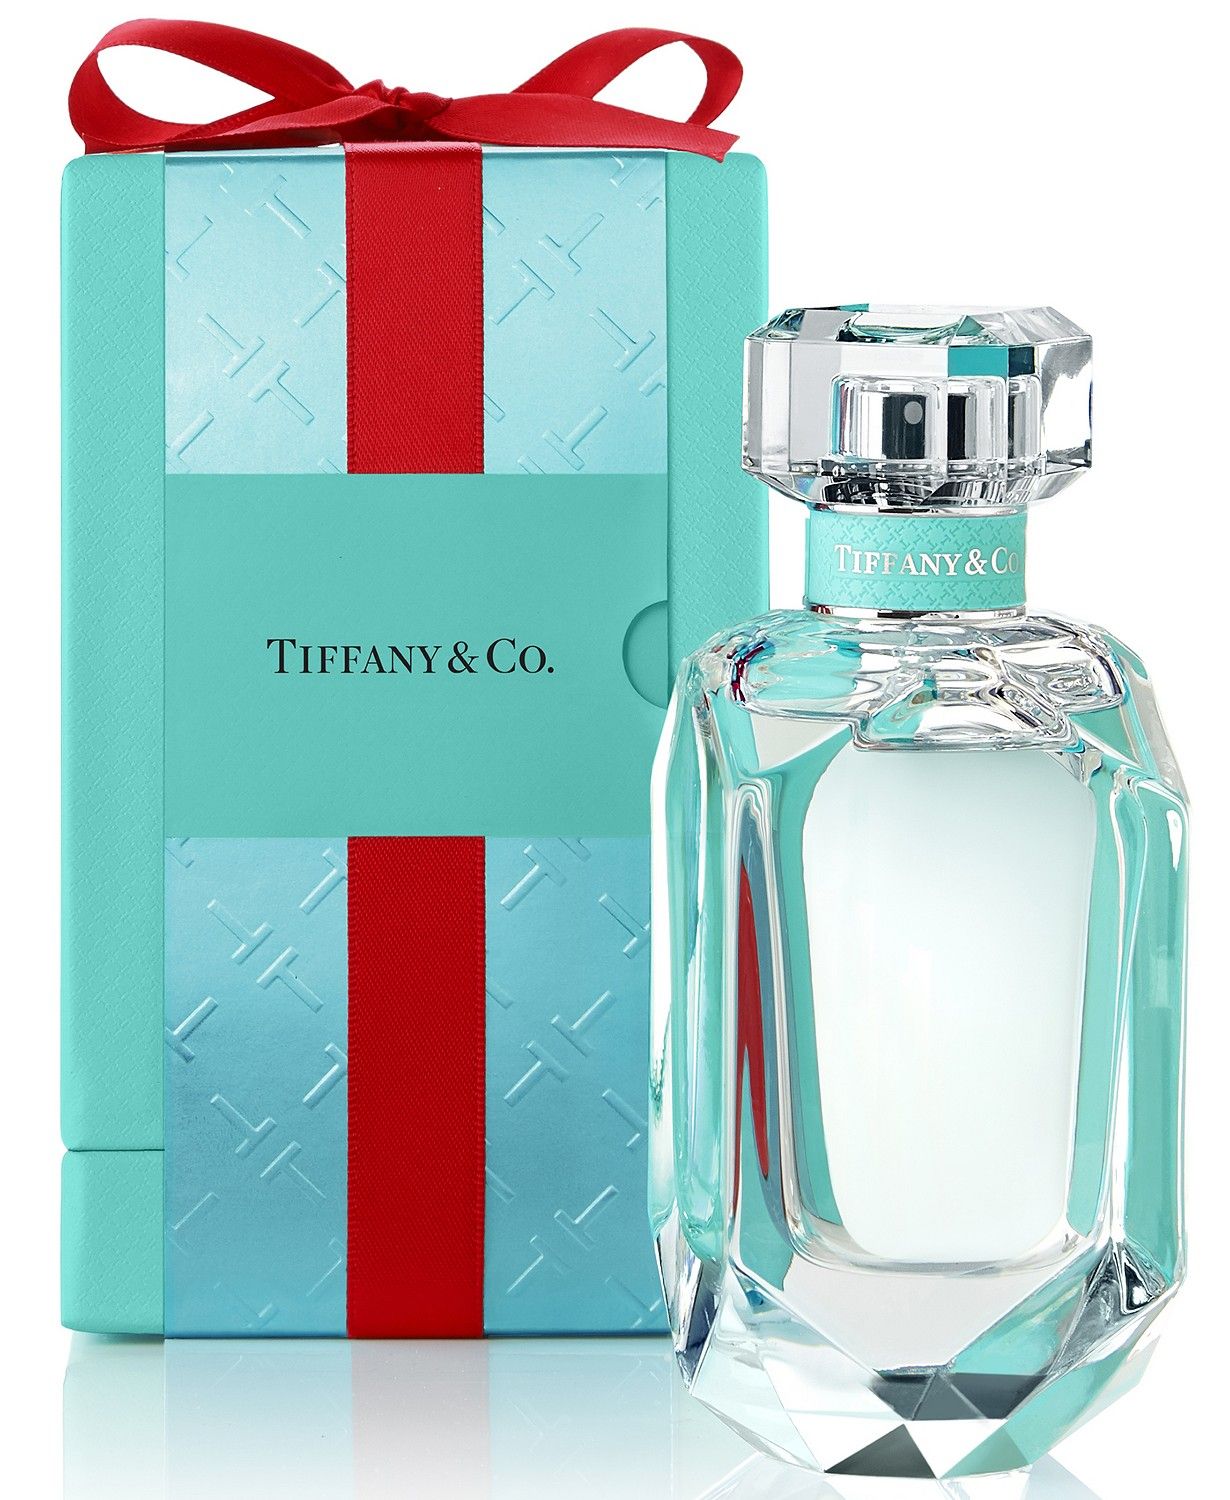 Tiffany & Co Eau de Parfum Holiday Limited Edition Tiffany 香水 - 一款 2020